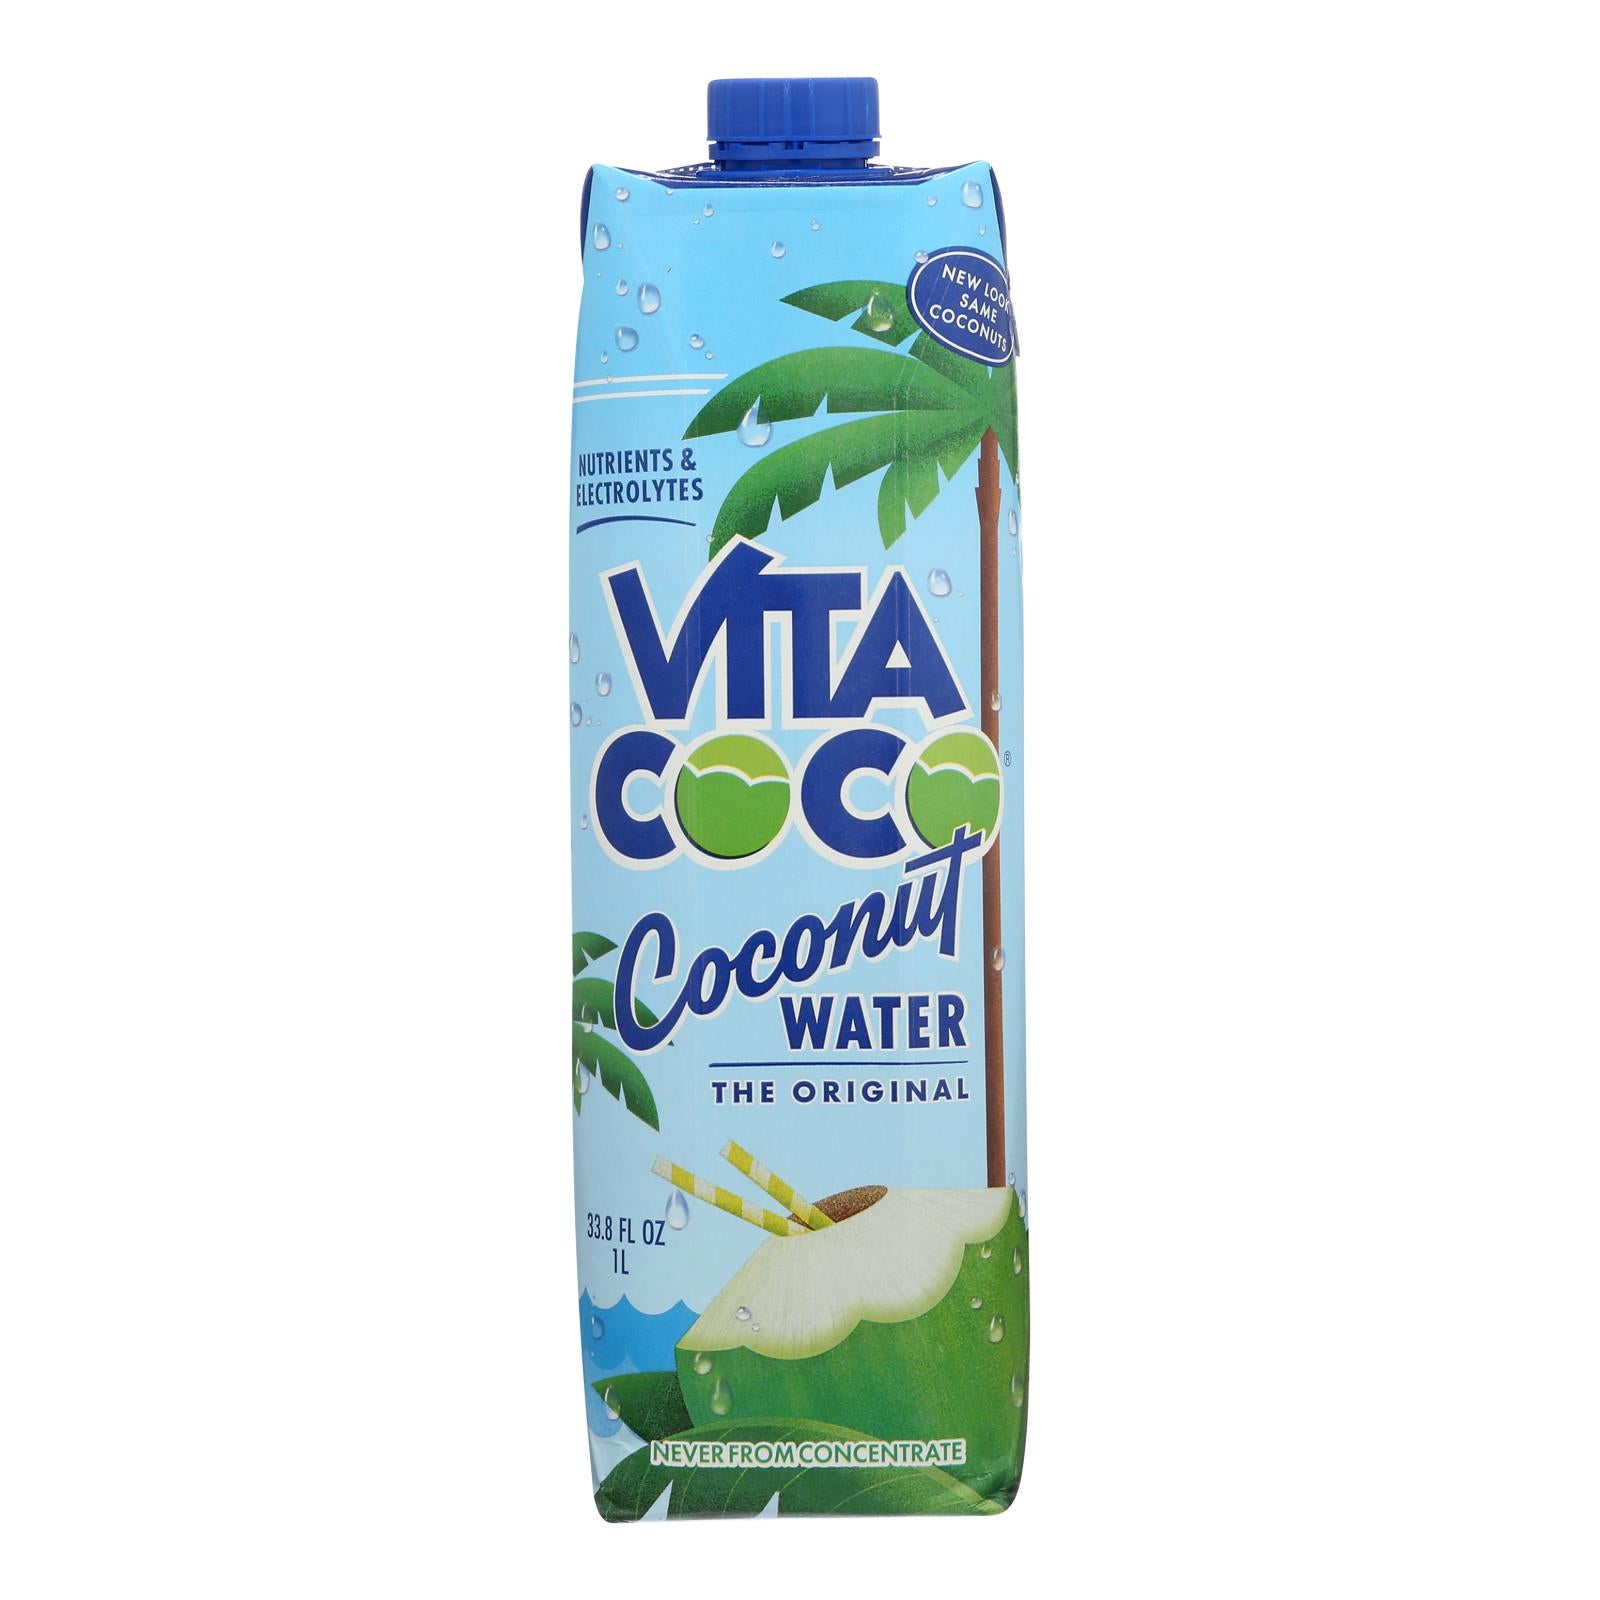 Vita Coco Coconut Water - Pure - Case Of 12 - 1 Liter